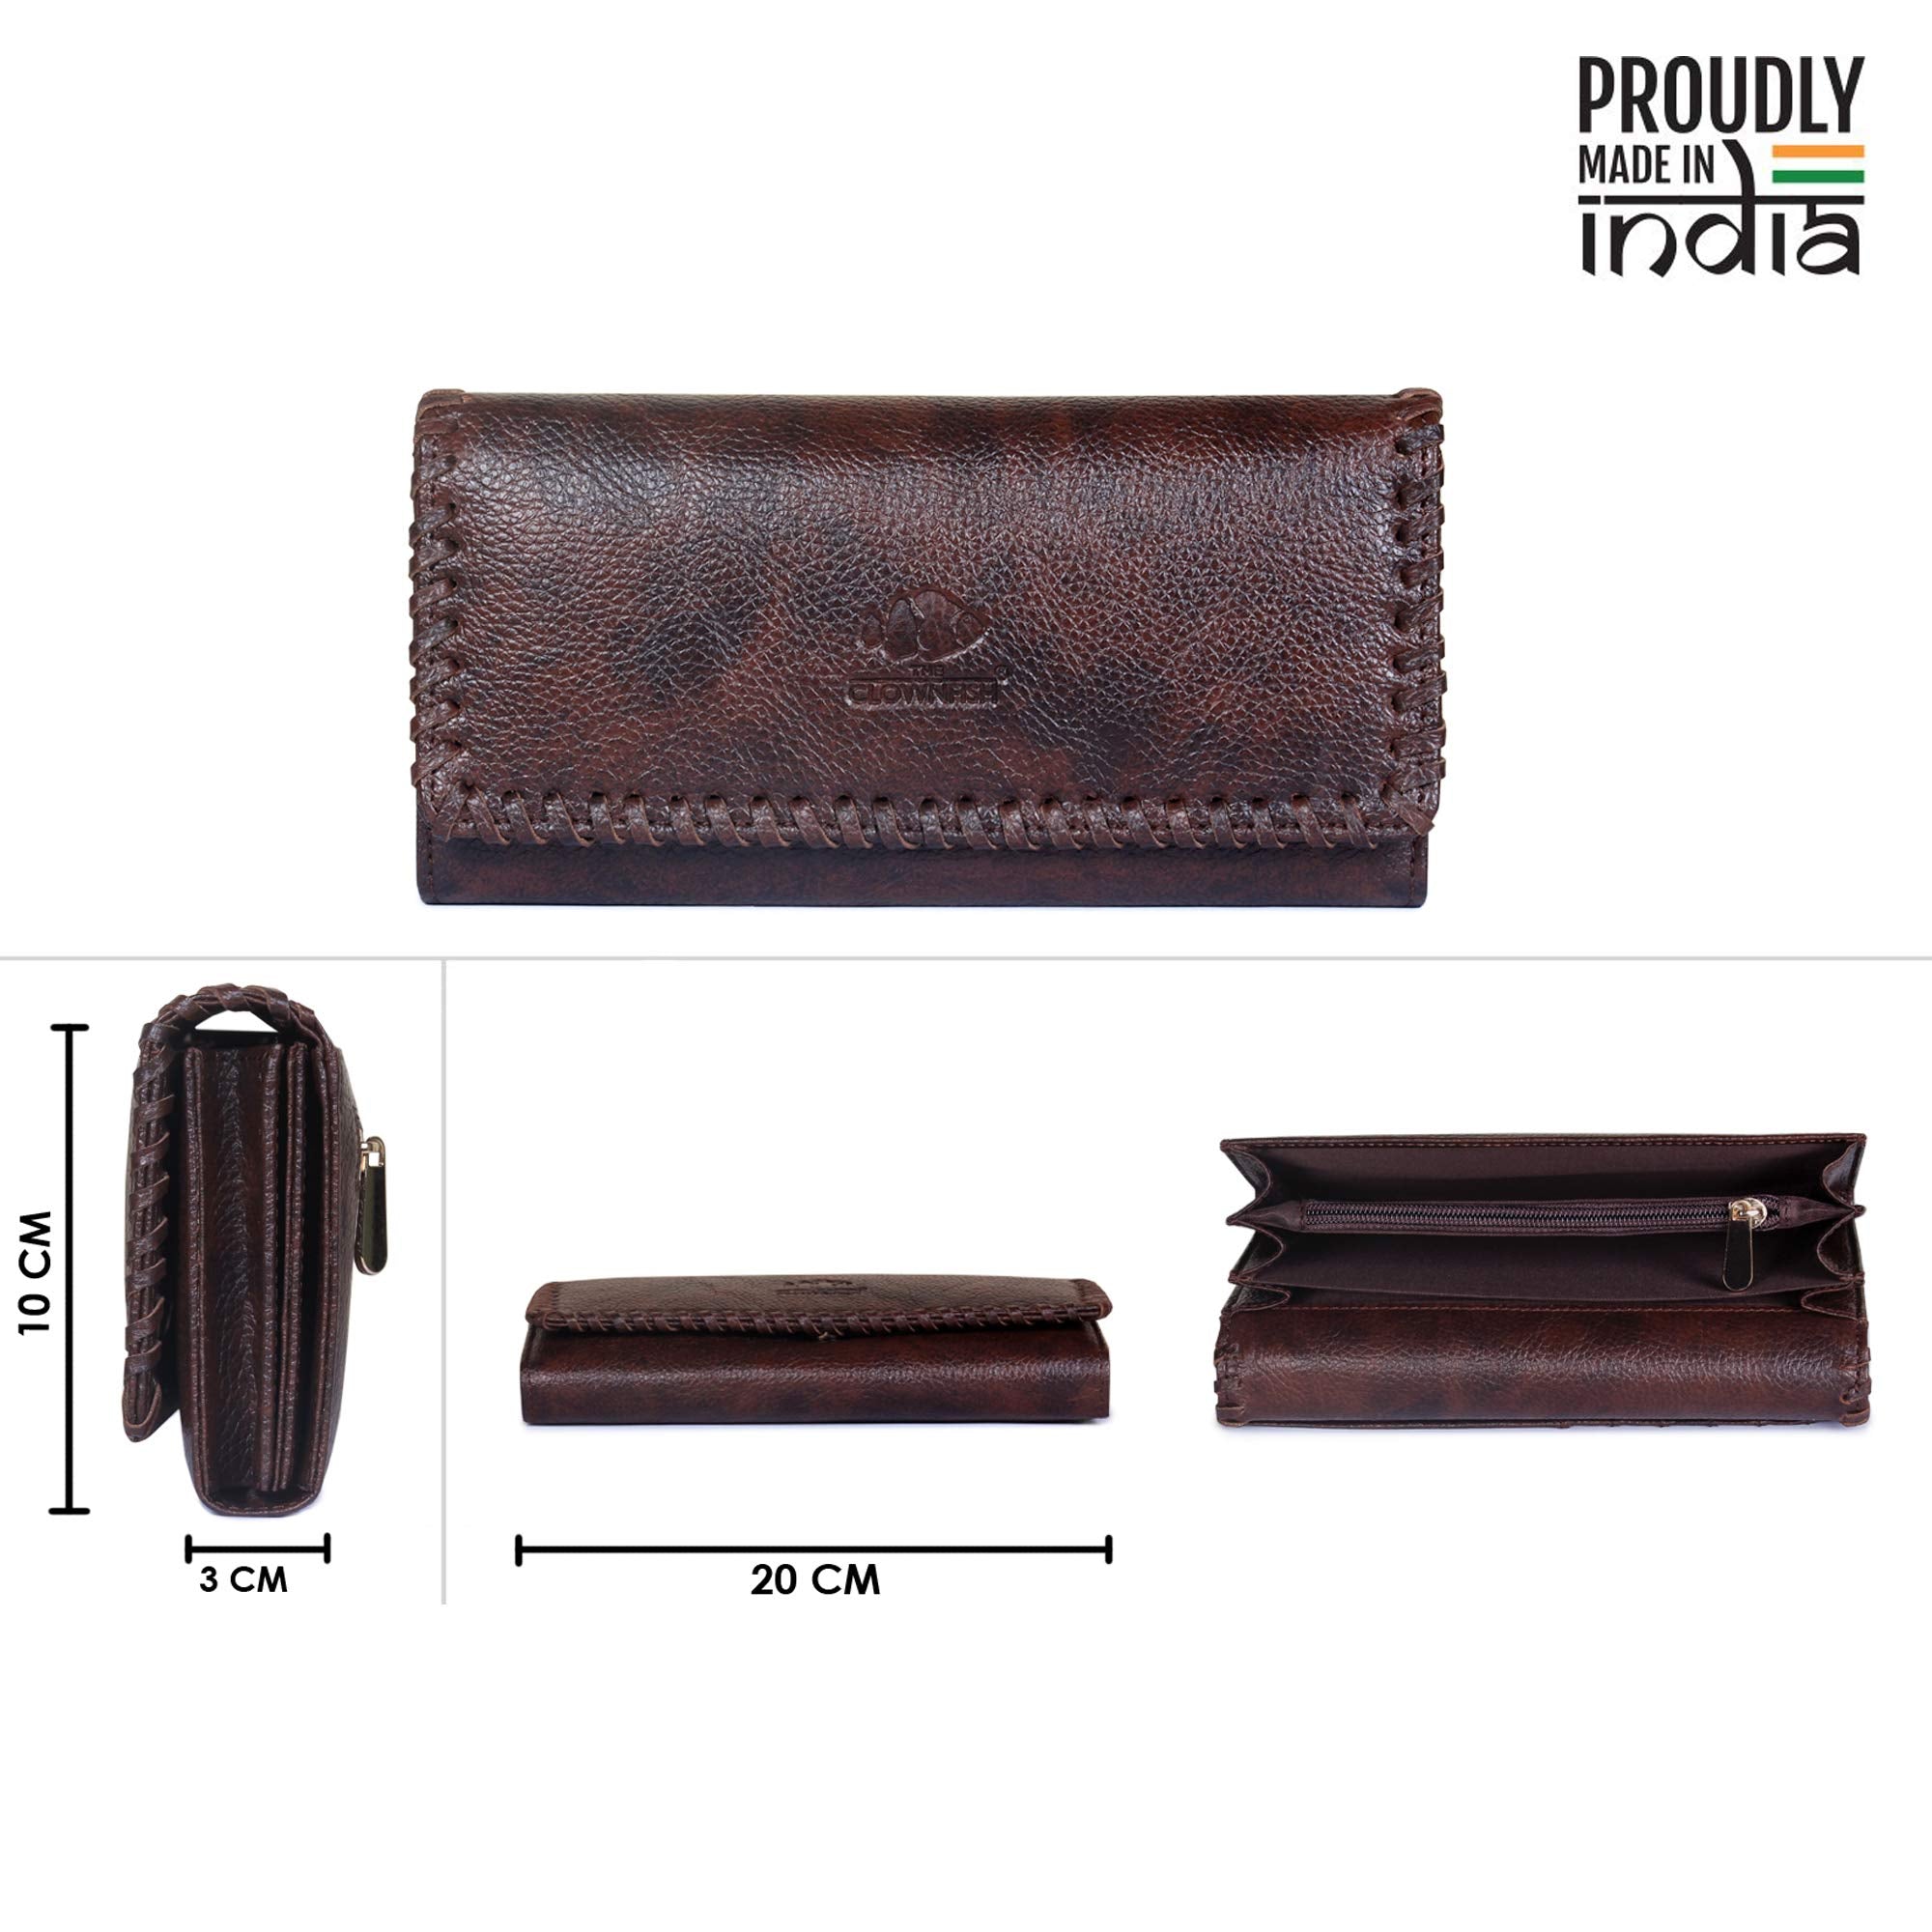 Genicci dark brown leather purse | Dark brown leather bag, Brown leather  purses, Brown leather